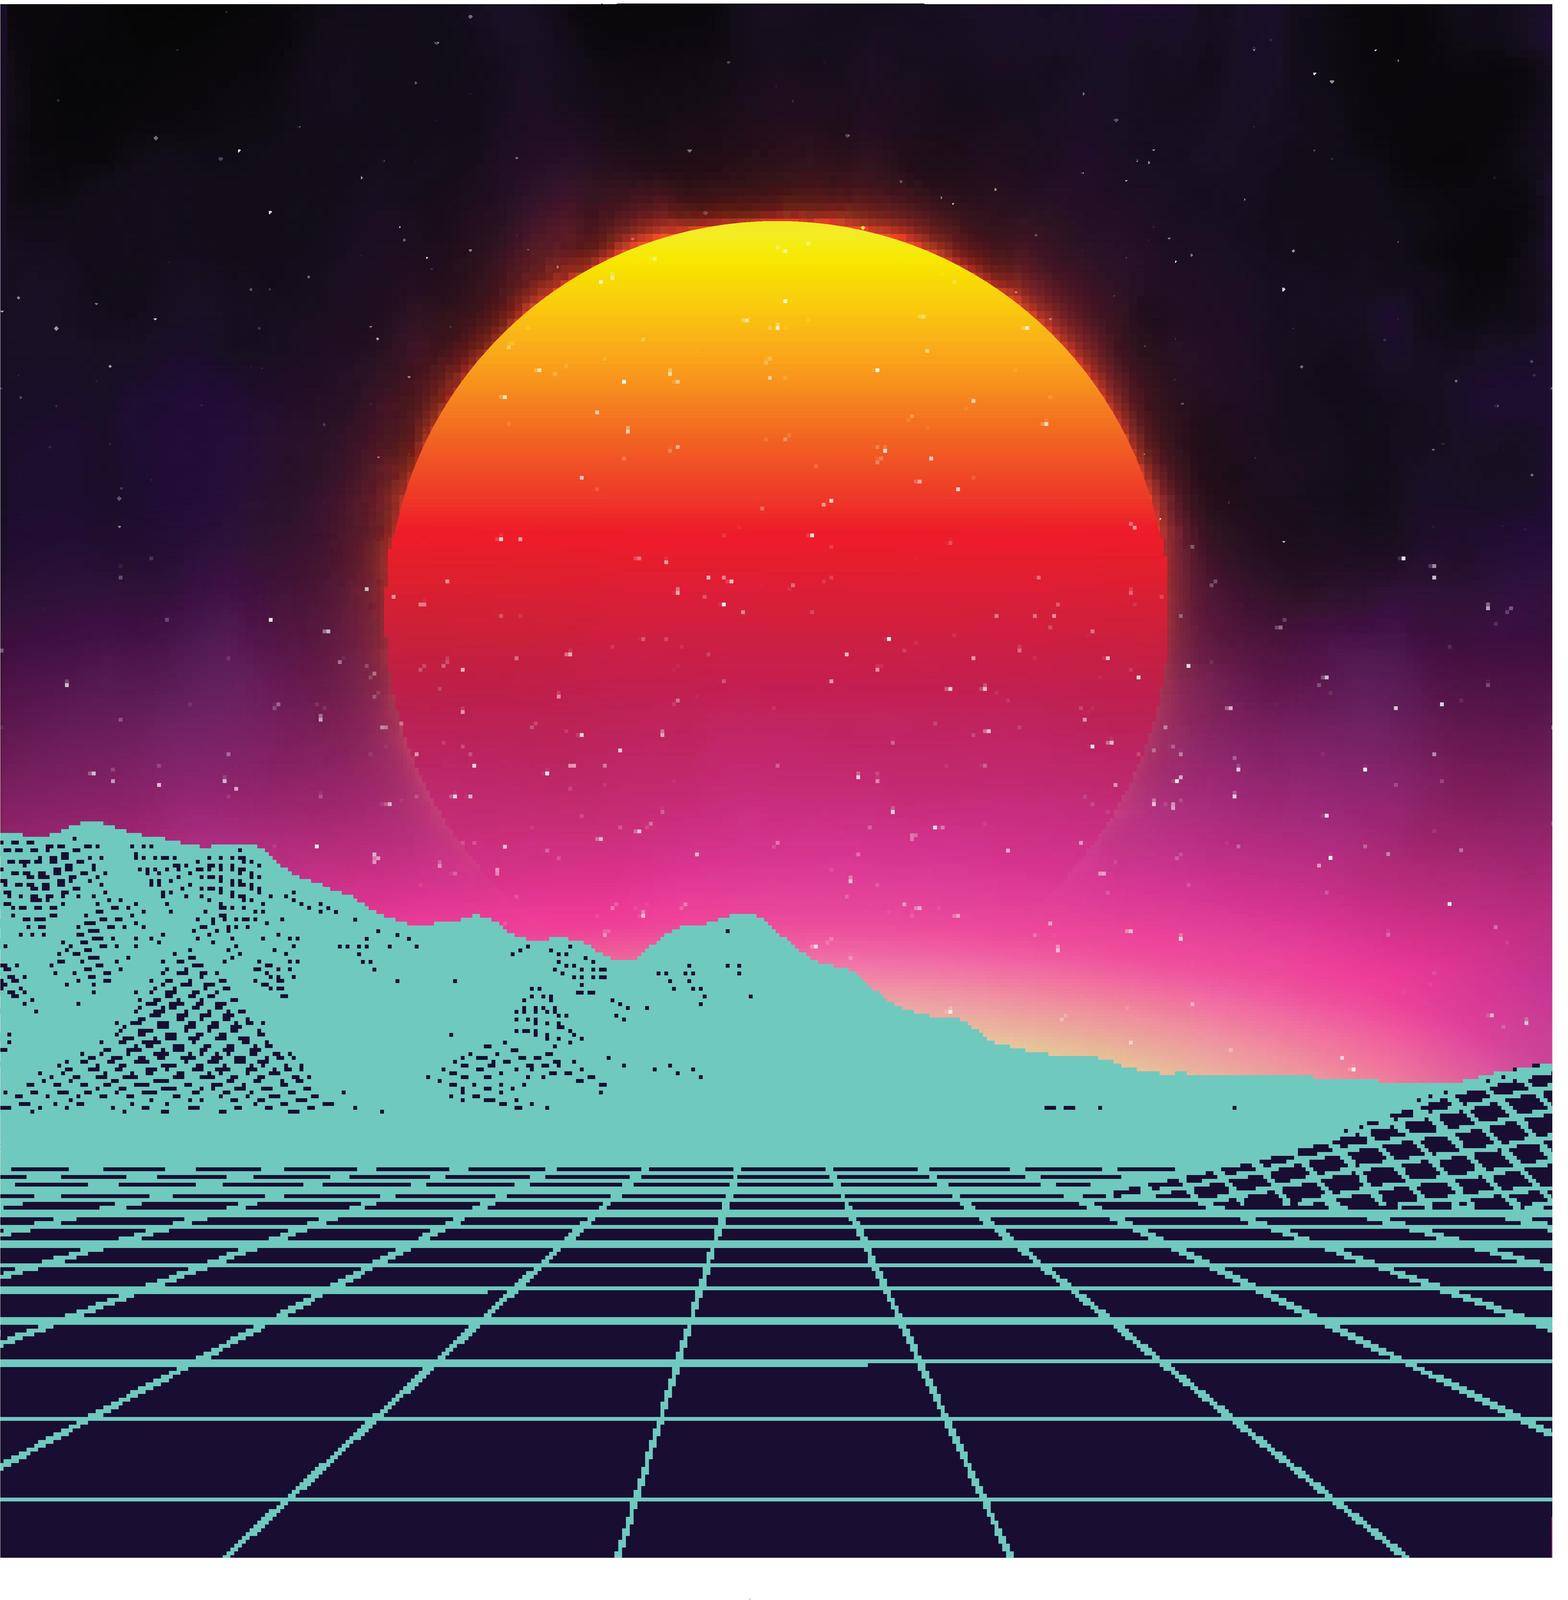 Retro background futuristic landscape 1980s style. Digital retro landscape cyber surface. Retro music album cover template sun, space, mountains . 80s Retro Sci-Fi Background Summer .